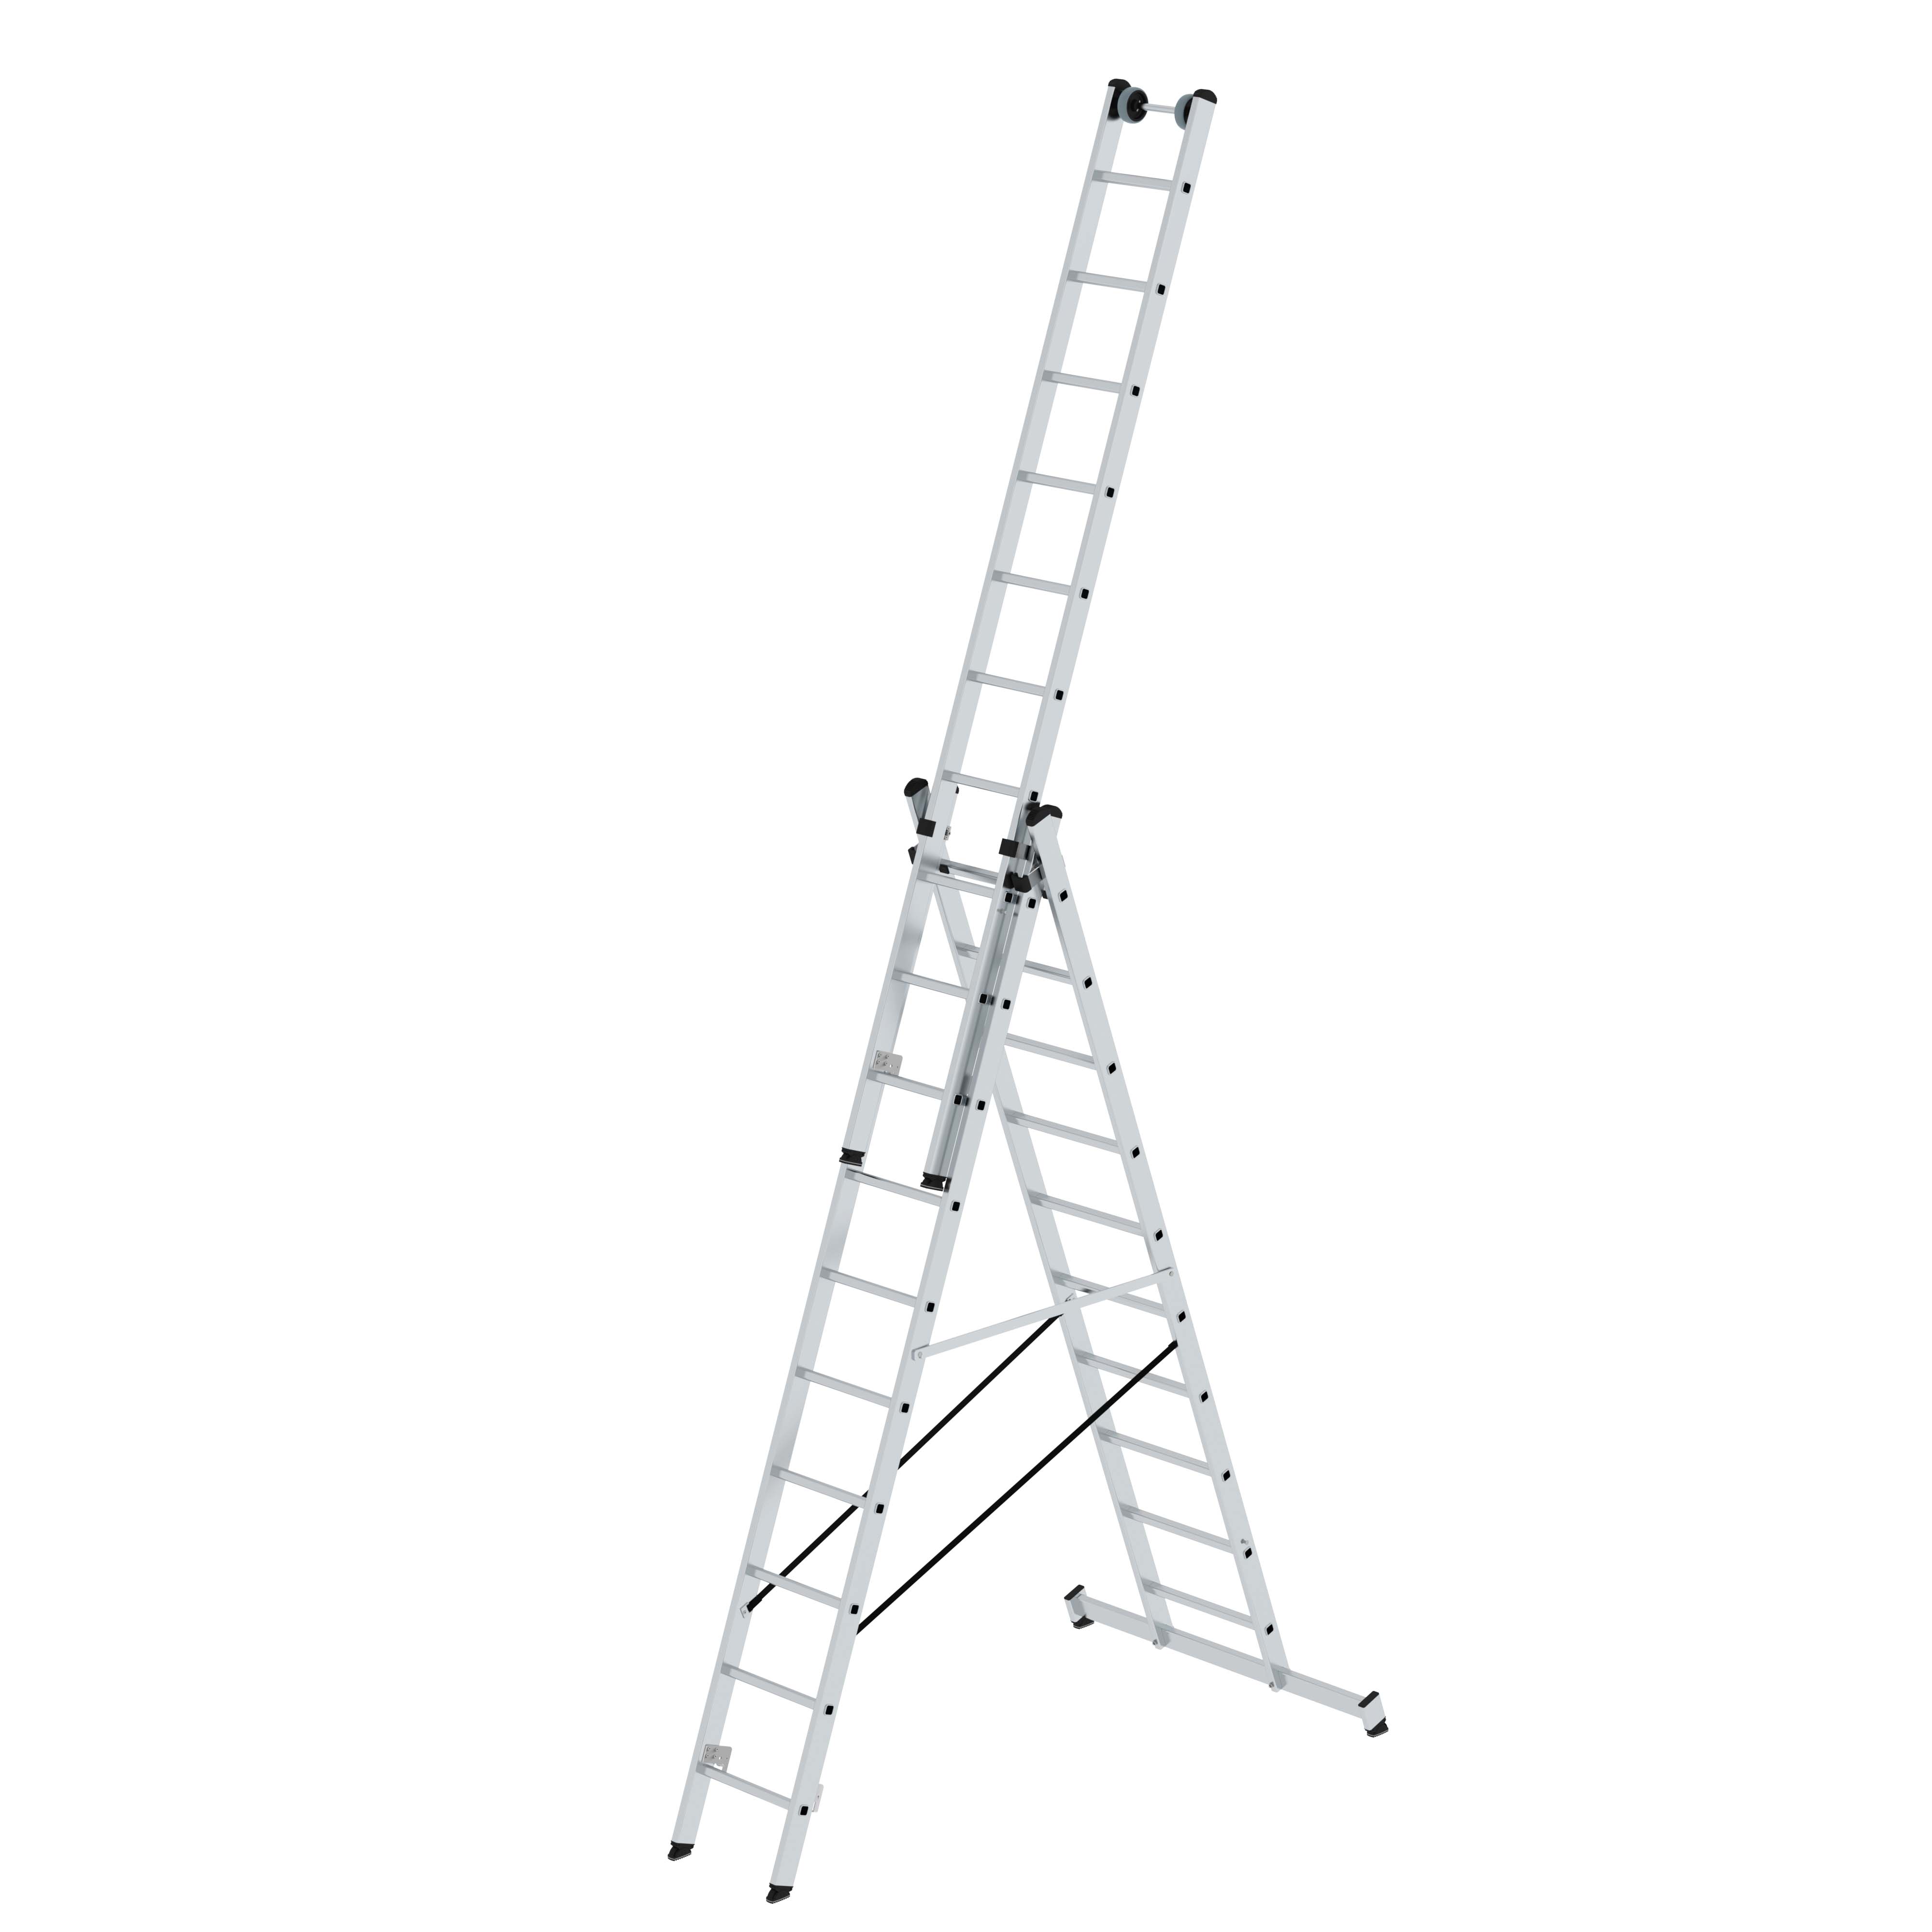 Sprossen-Mehrzweckleiter 3-teilig mit Traverse  -  Leiteraus Aluminium, 4 x 3 Sprossen, einsetzbar als Steh- und Anlegeleiter sowie optional als Arbeitsbühne 